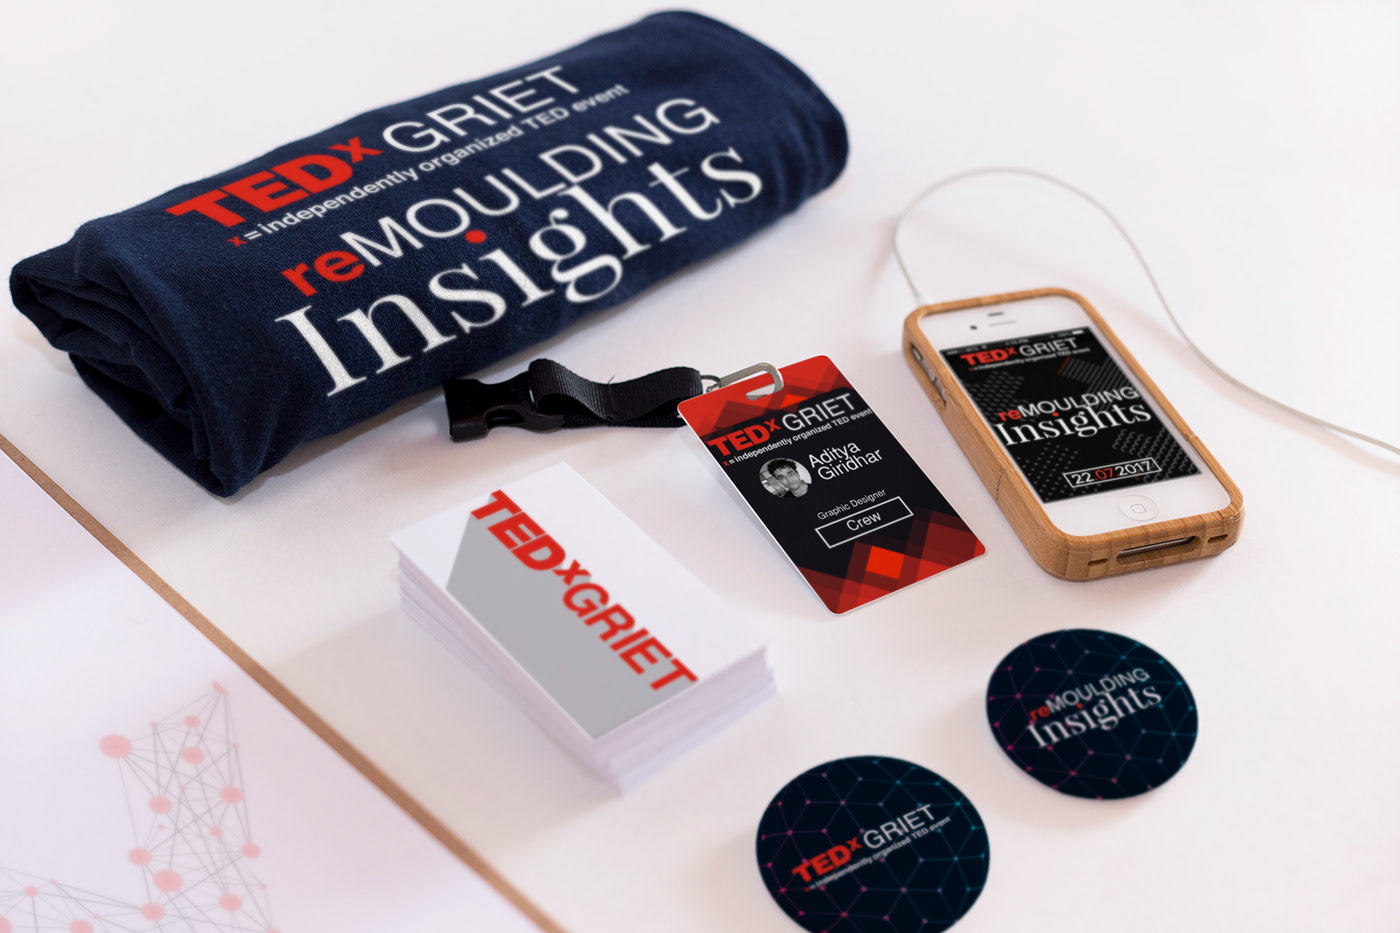 TEDx TED branding  UI/UX iphone app logo